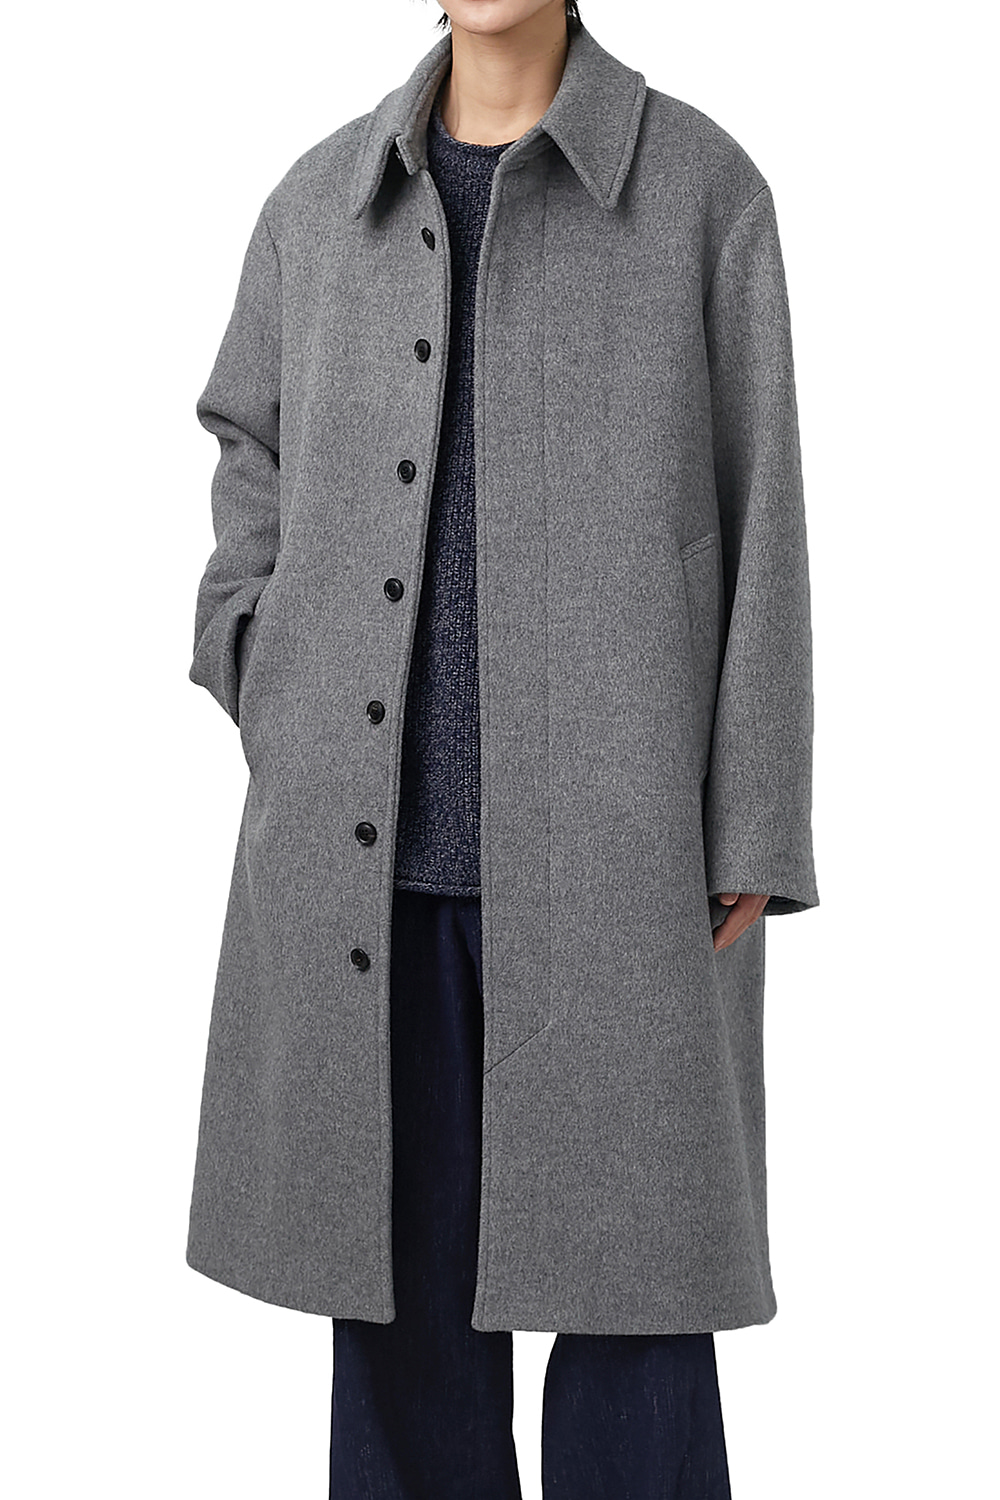 Balmacaan Coat Grey